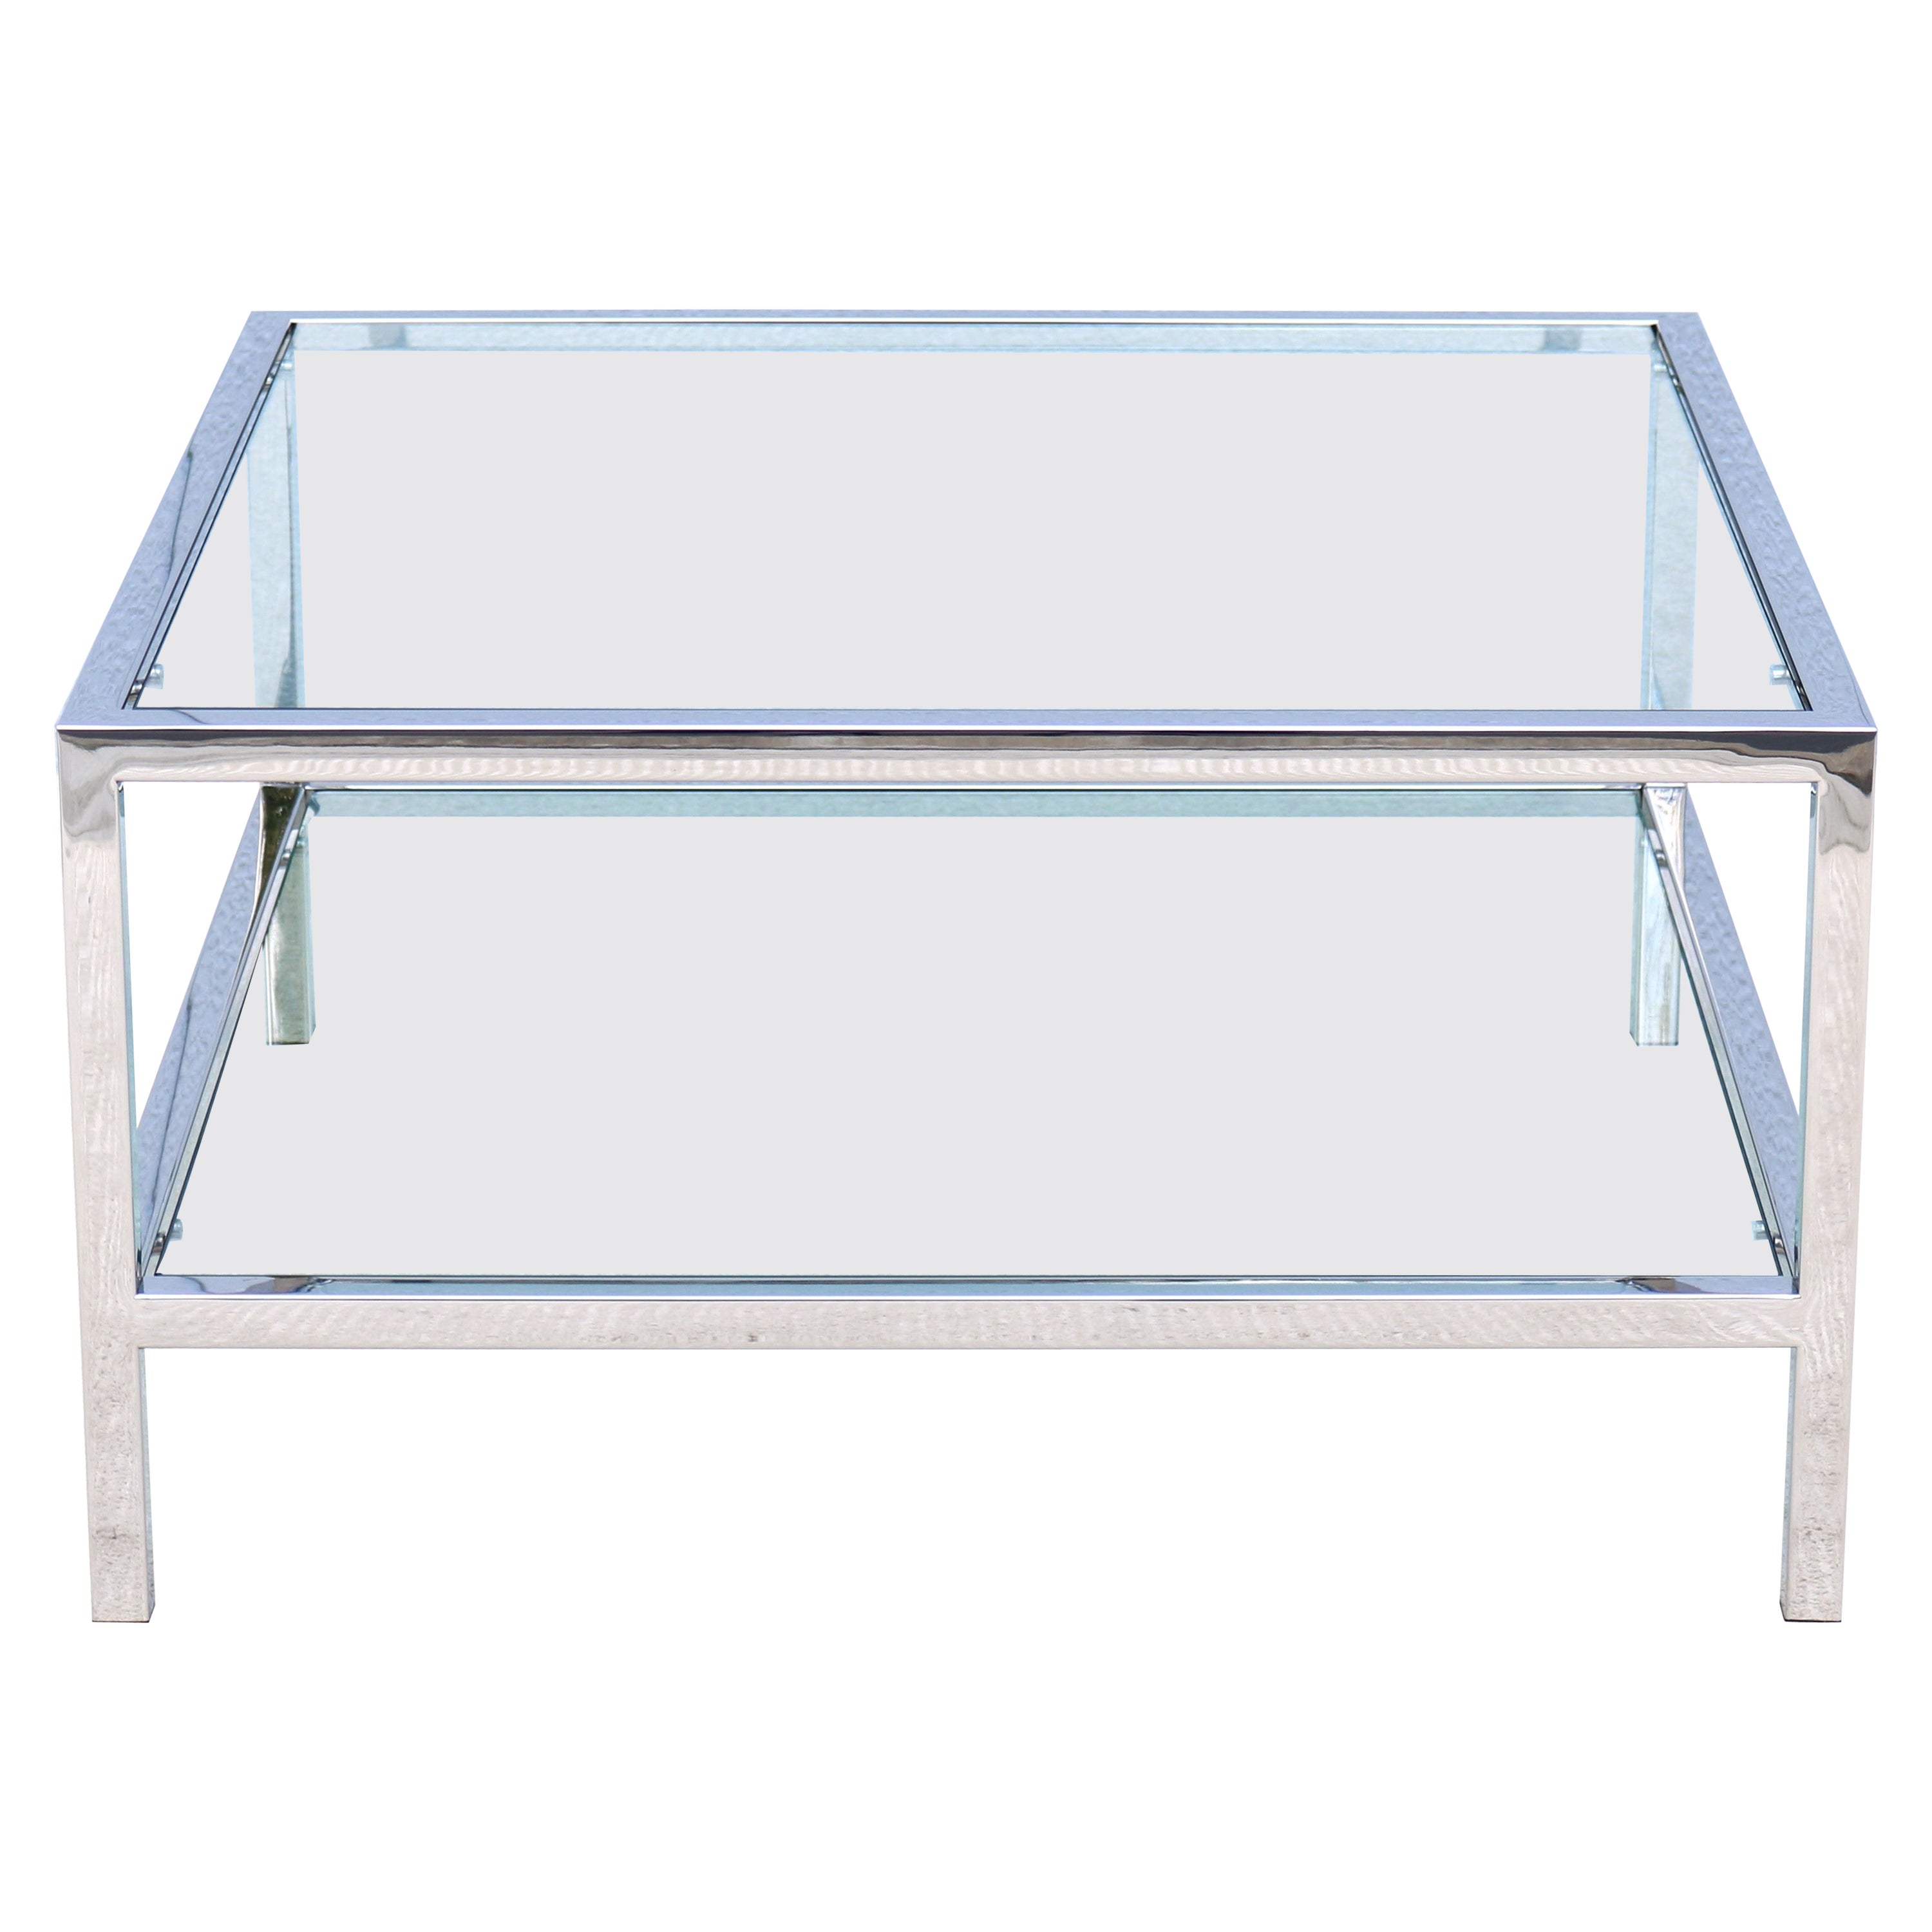 Modernisme du milieu du siècle dernier style Milo Baughman table basse carrée en verre avec étagère en vente